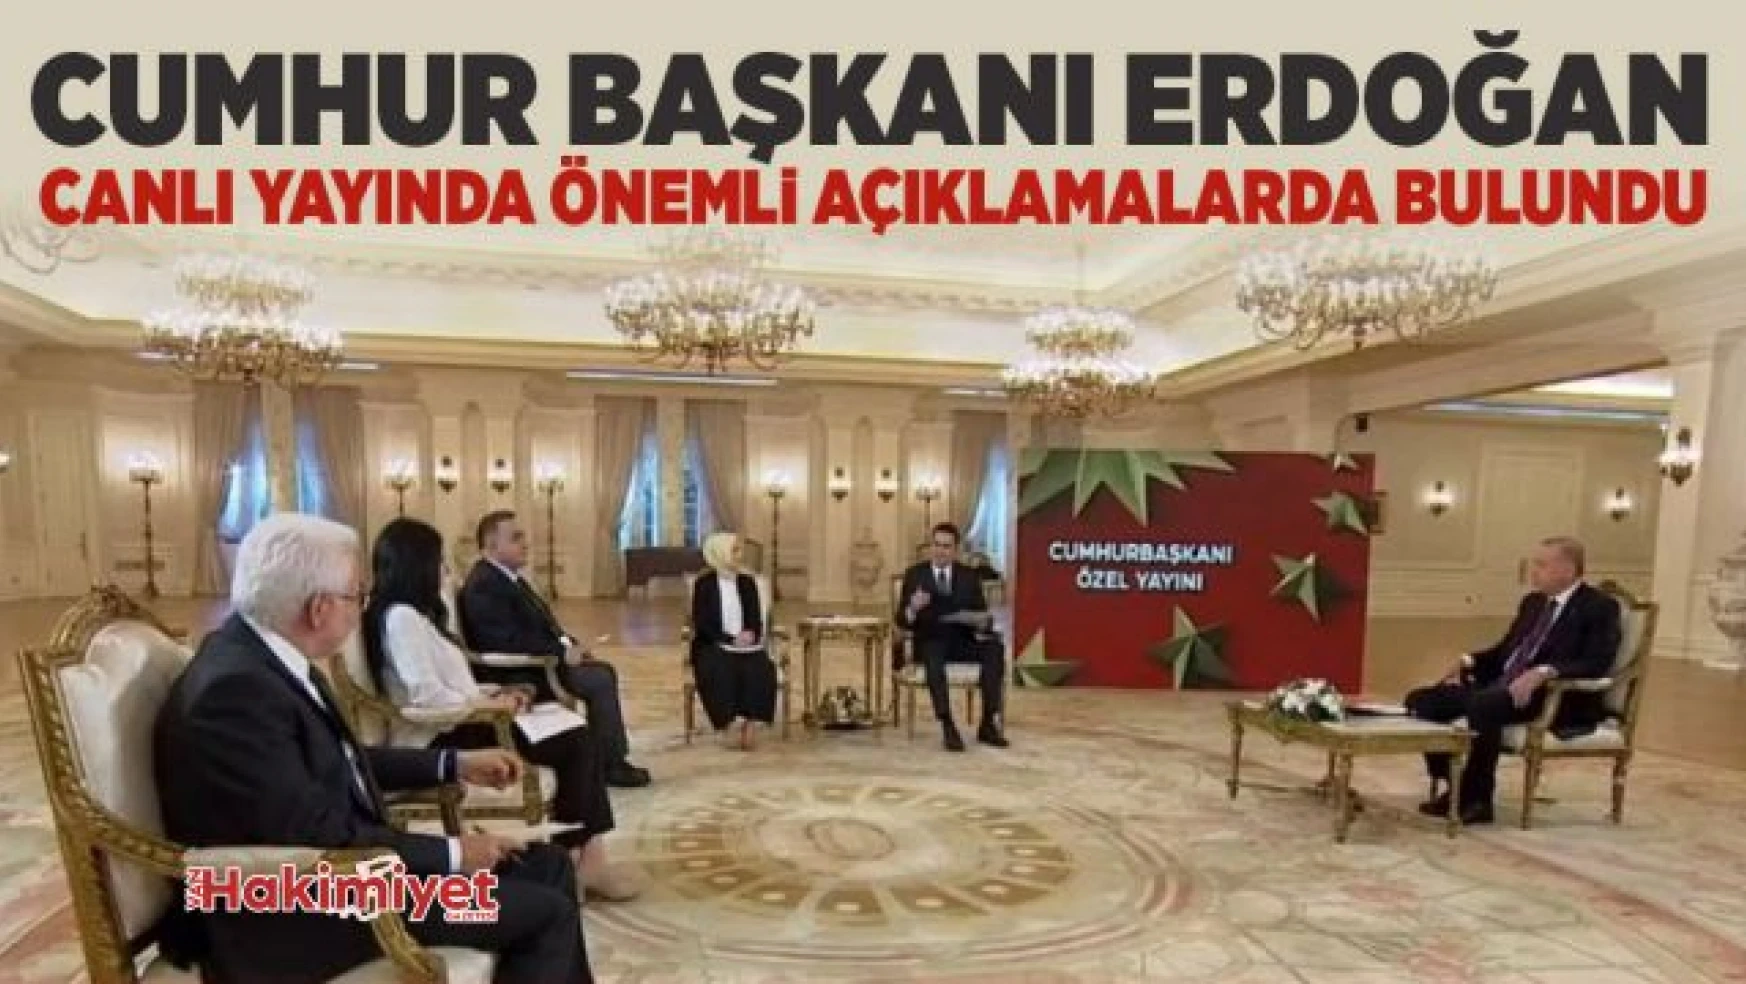 Erdoğan'dan canlı yayında önemli açıklamalarda bulundu